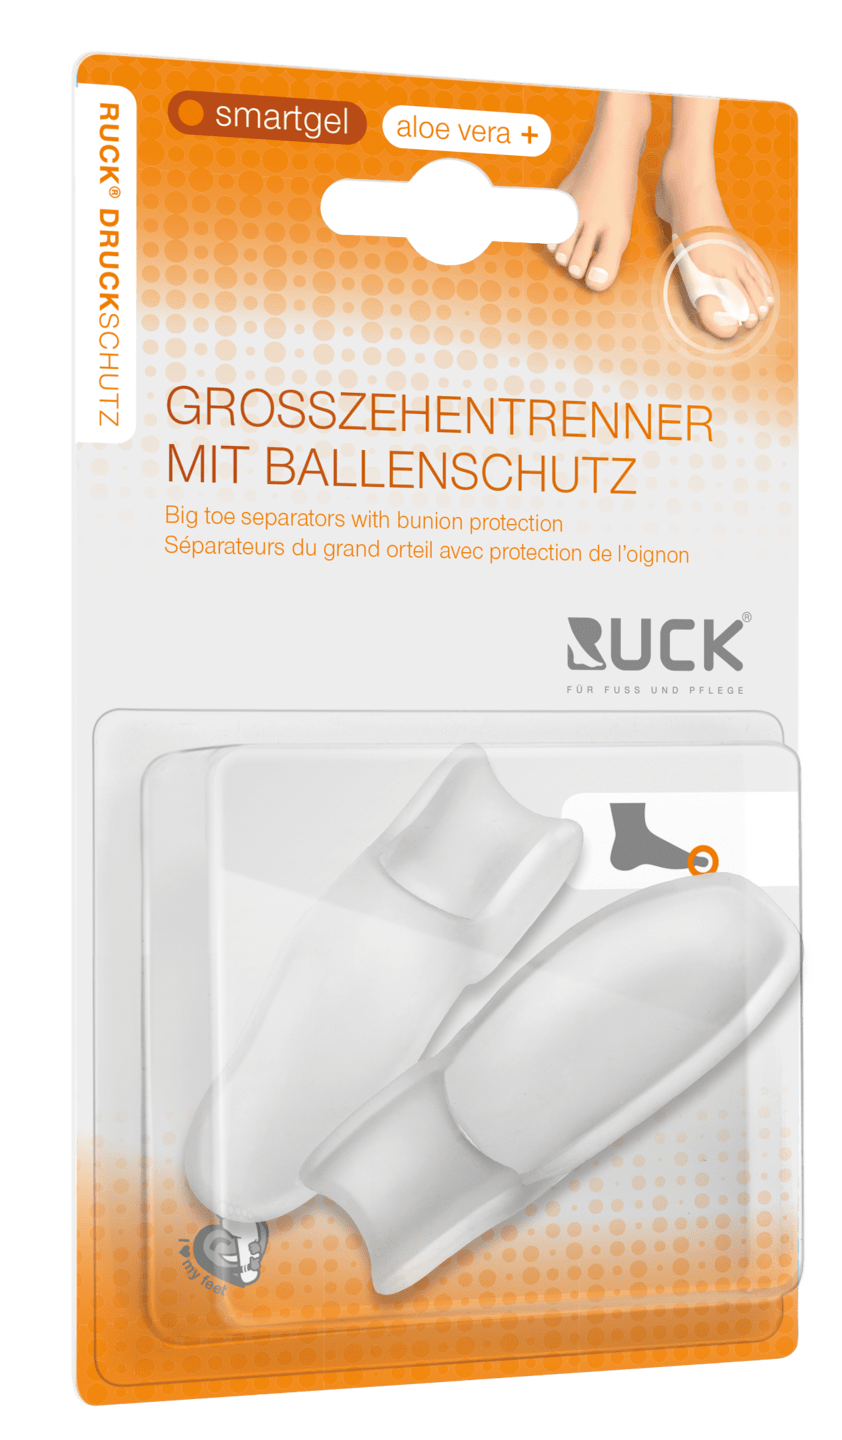 RUCK DRUCKSCHUTZ - Großzehentrenner mit Ballenschutz